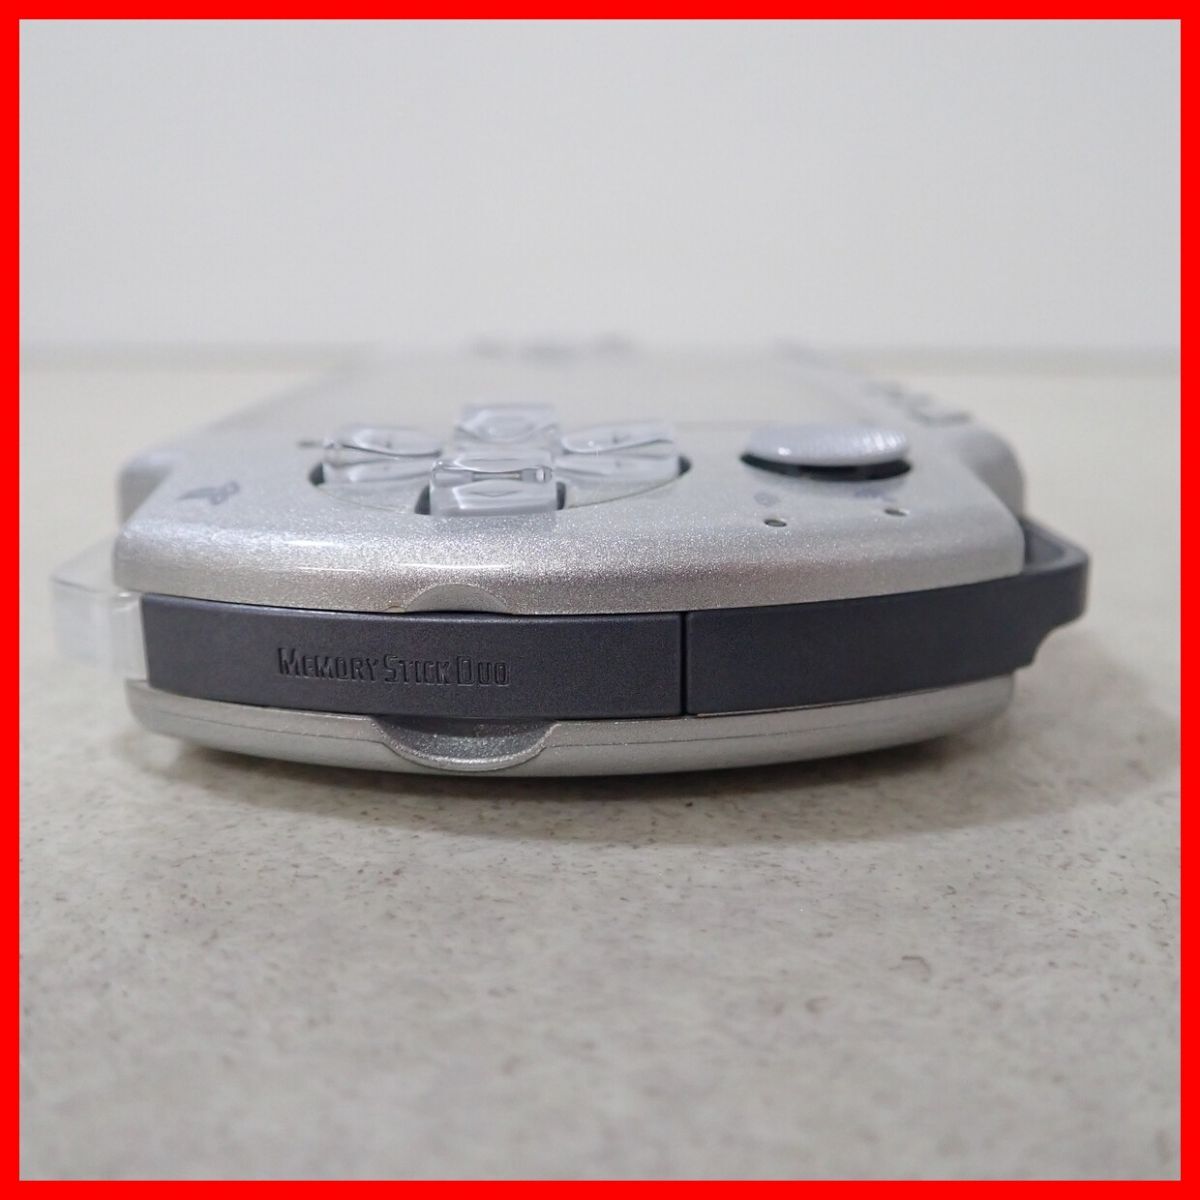  рабочий товар PSP PlayStation портативный корпус PSP-2000 лёд серебряный Sony SONY коробка мнение есть [10